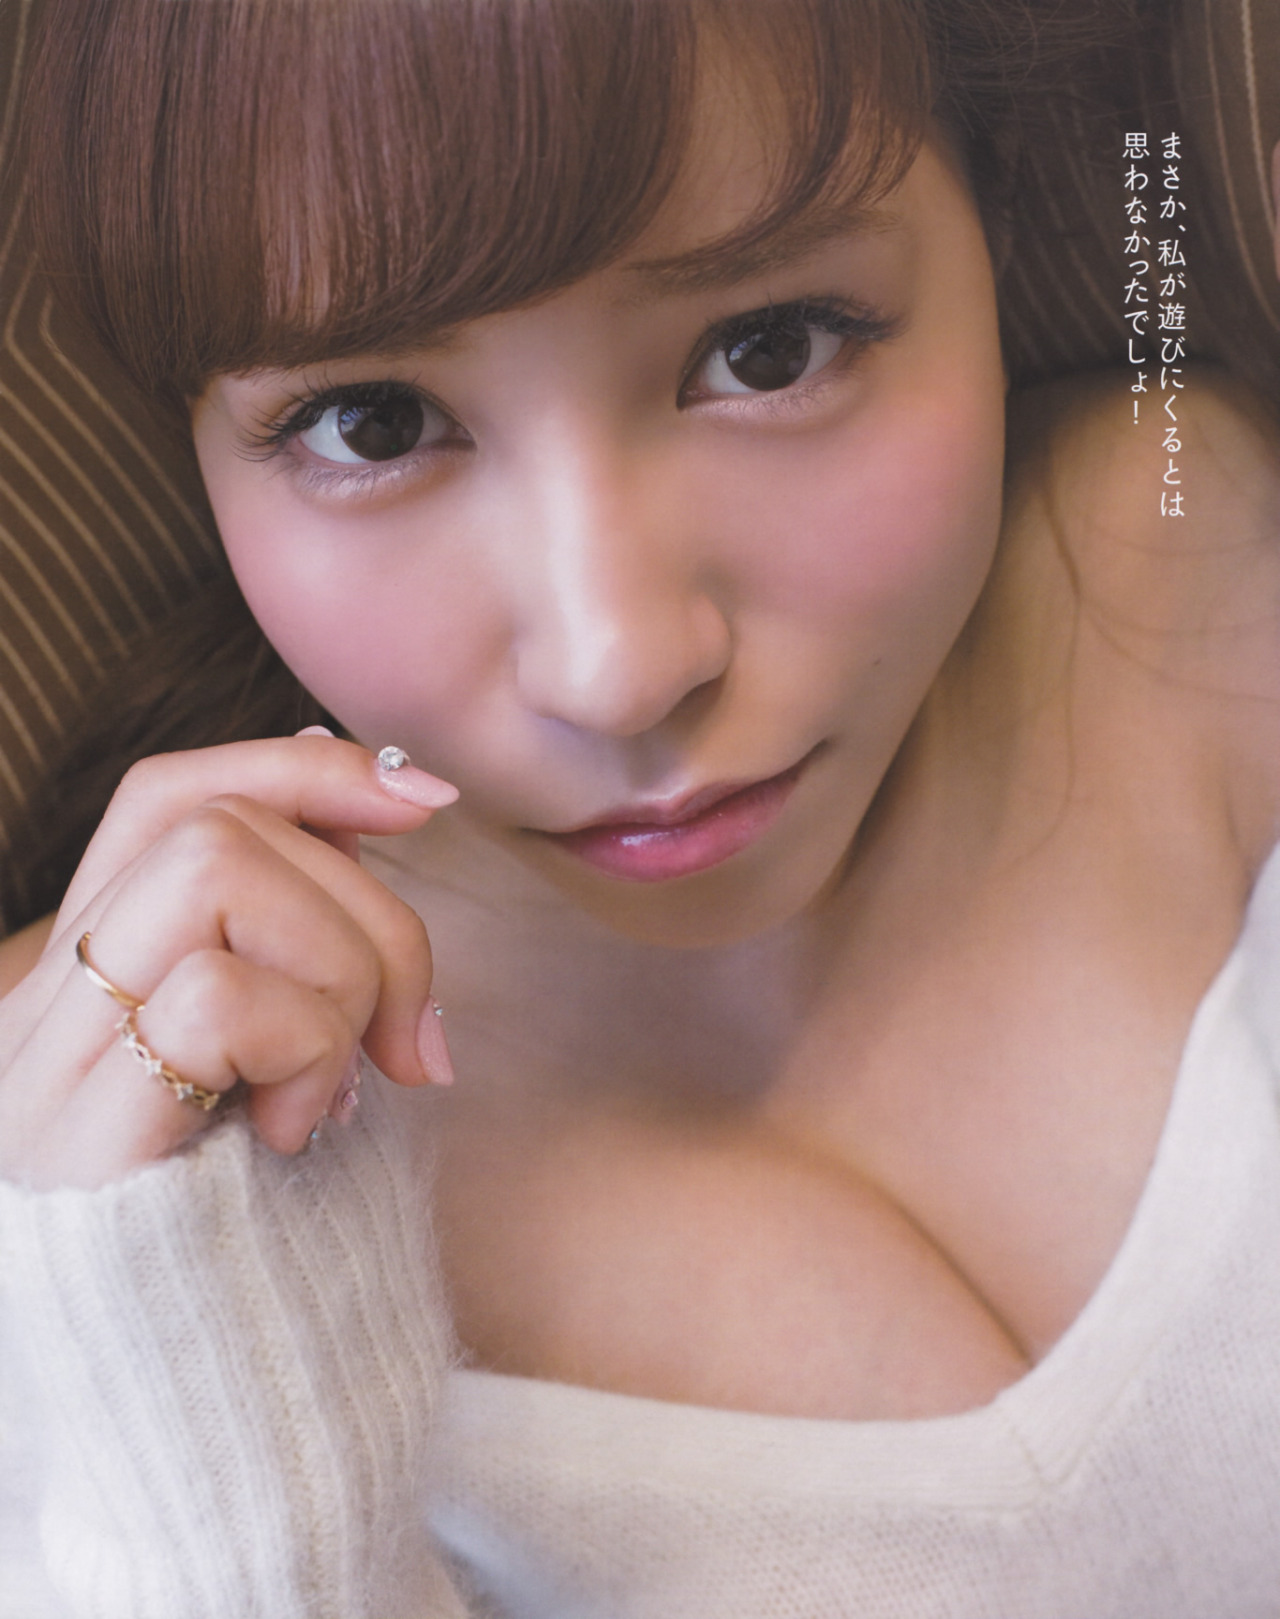 【歌手】元AKB48河西智美、「婚活」宣言　相手は「経済力がある方」「早く子どもが産みたい」 	->画像>52枚 